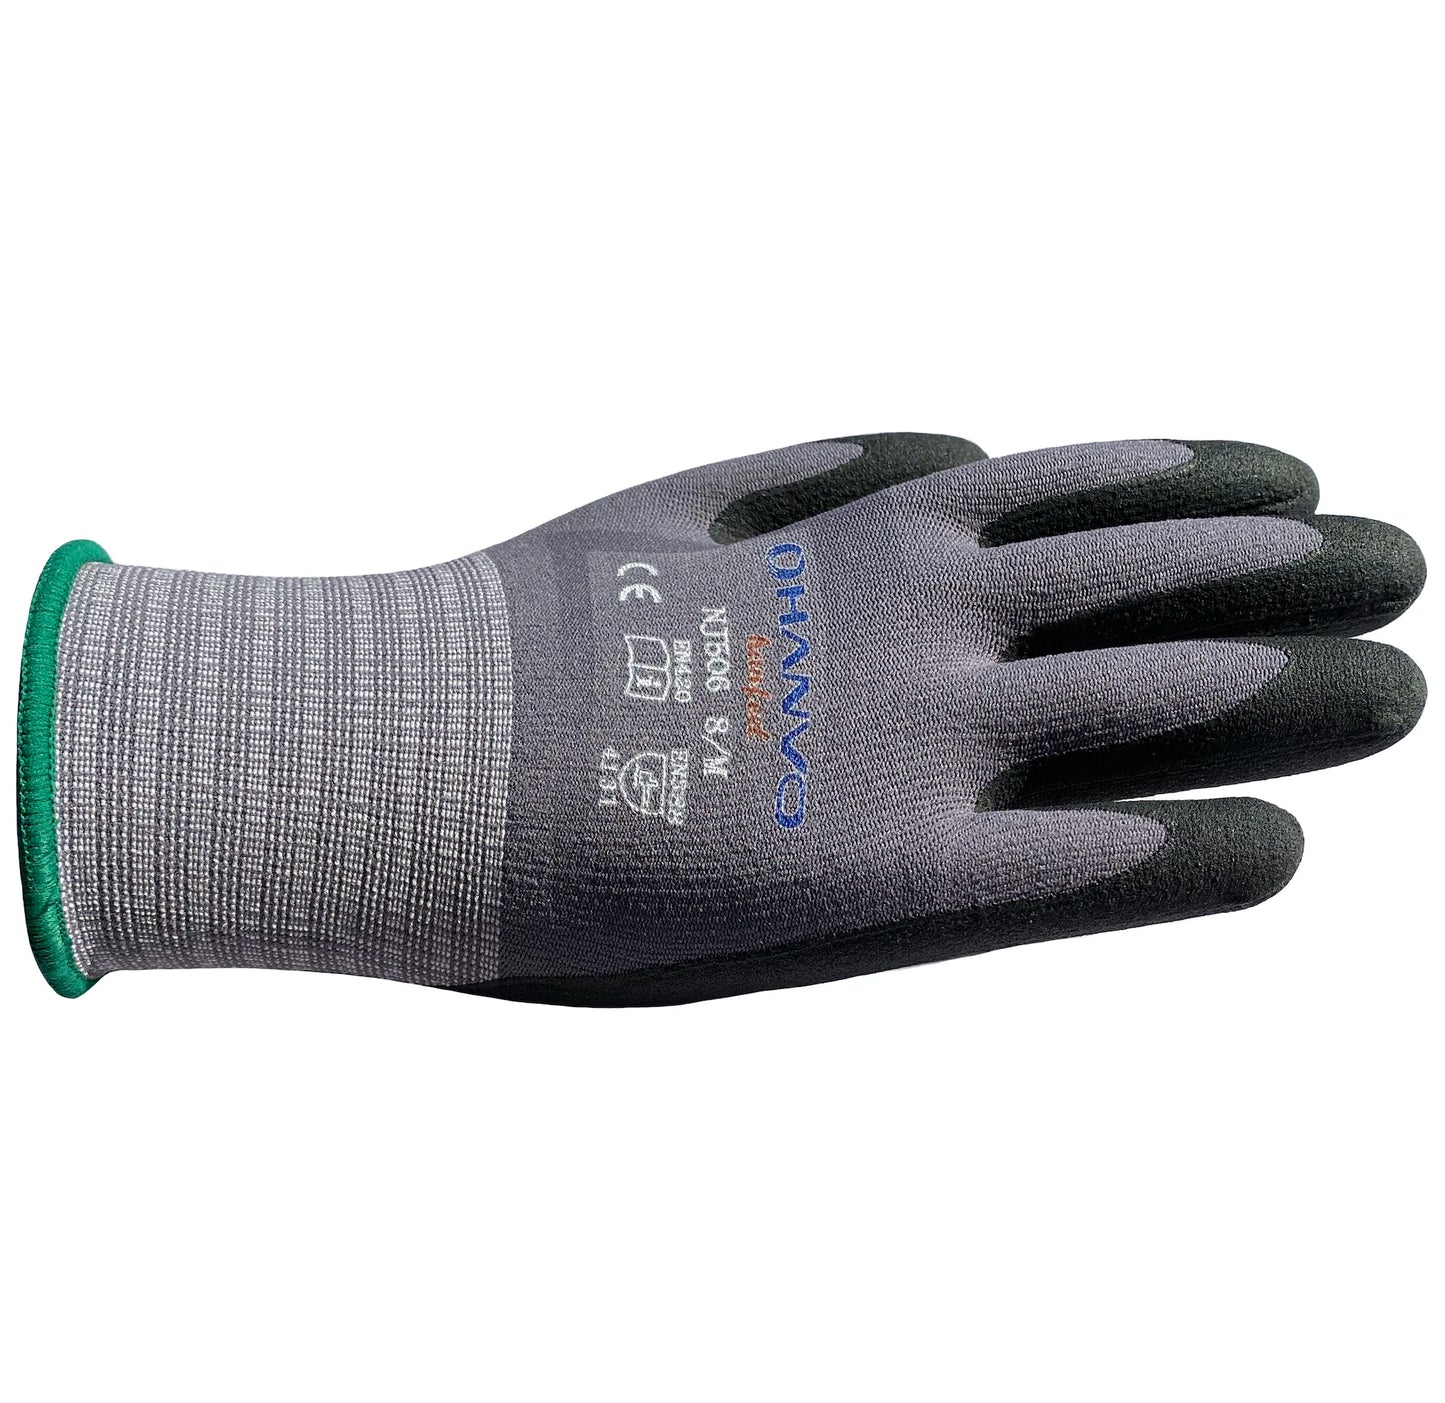 Garden Work Gloves 4 Pairs Oil Gas Resistant High Flex CE 4131 Safety Gloves 4pc